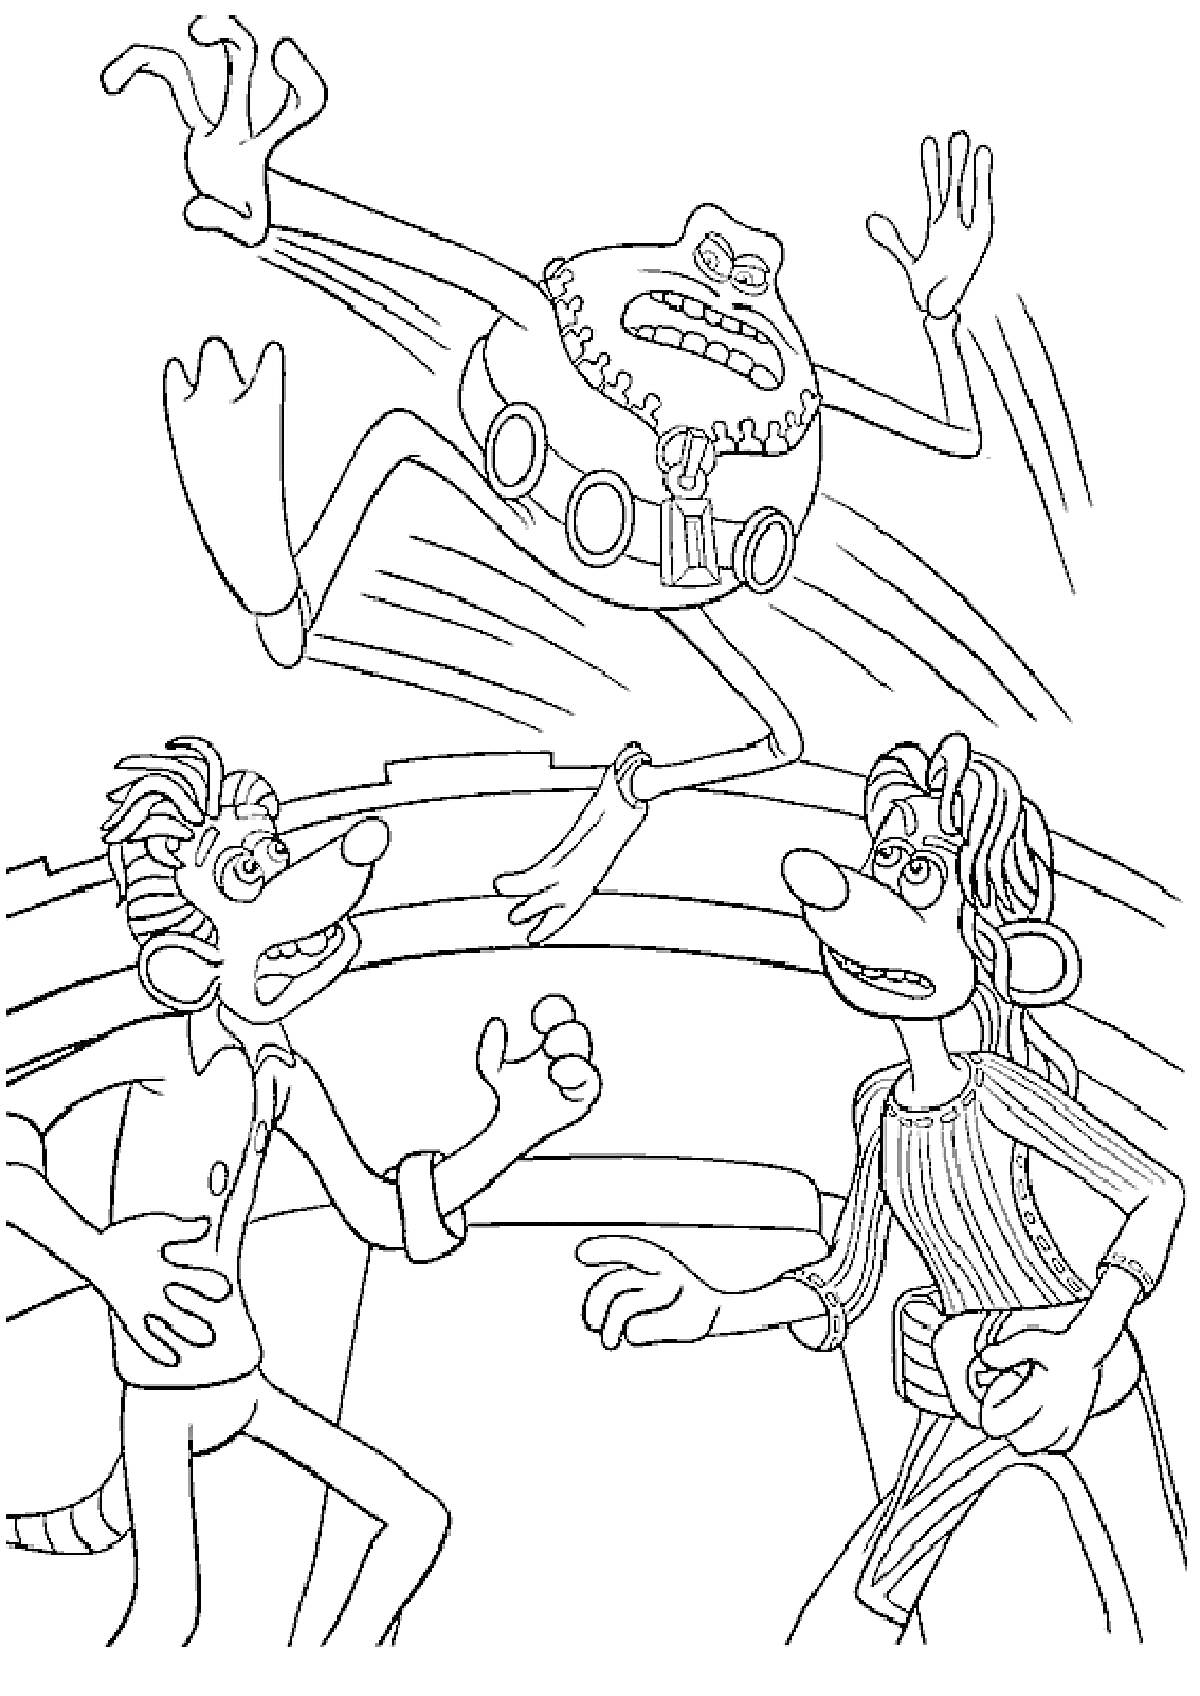 Три мультяшных персонажа: один прыгает, двое внизу поднимают руки в удивлении